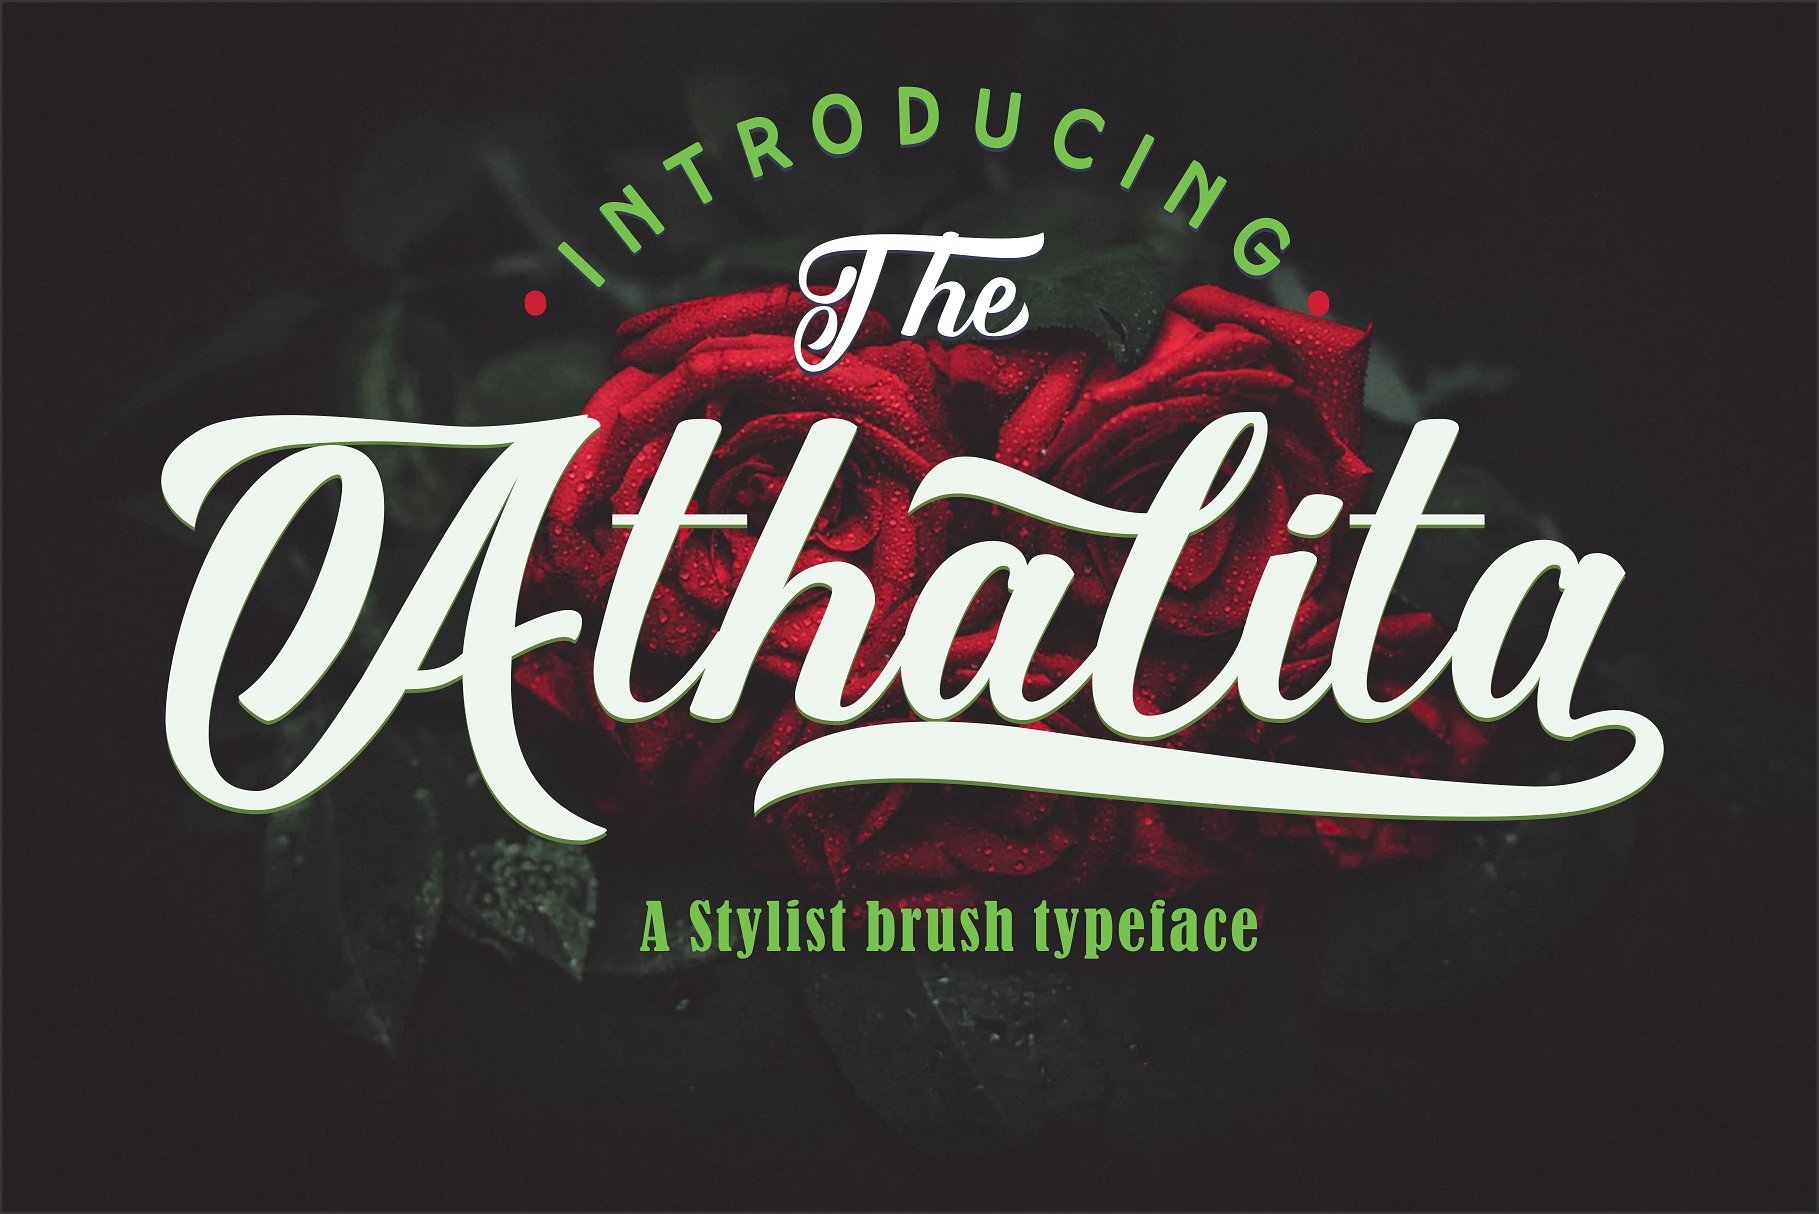 The Athalita